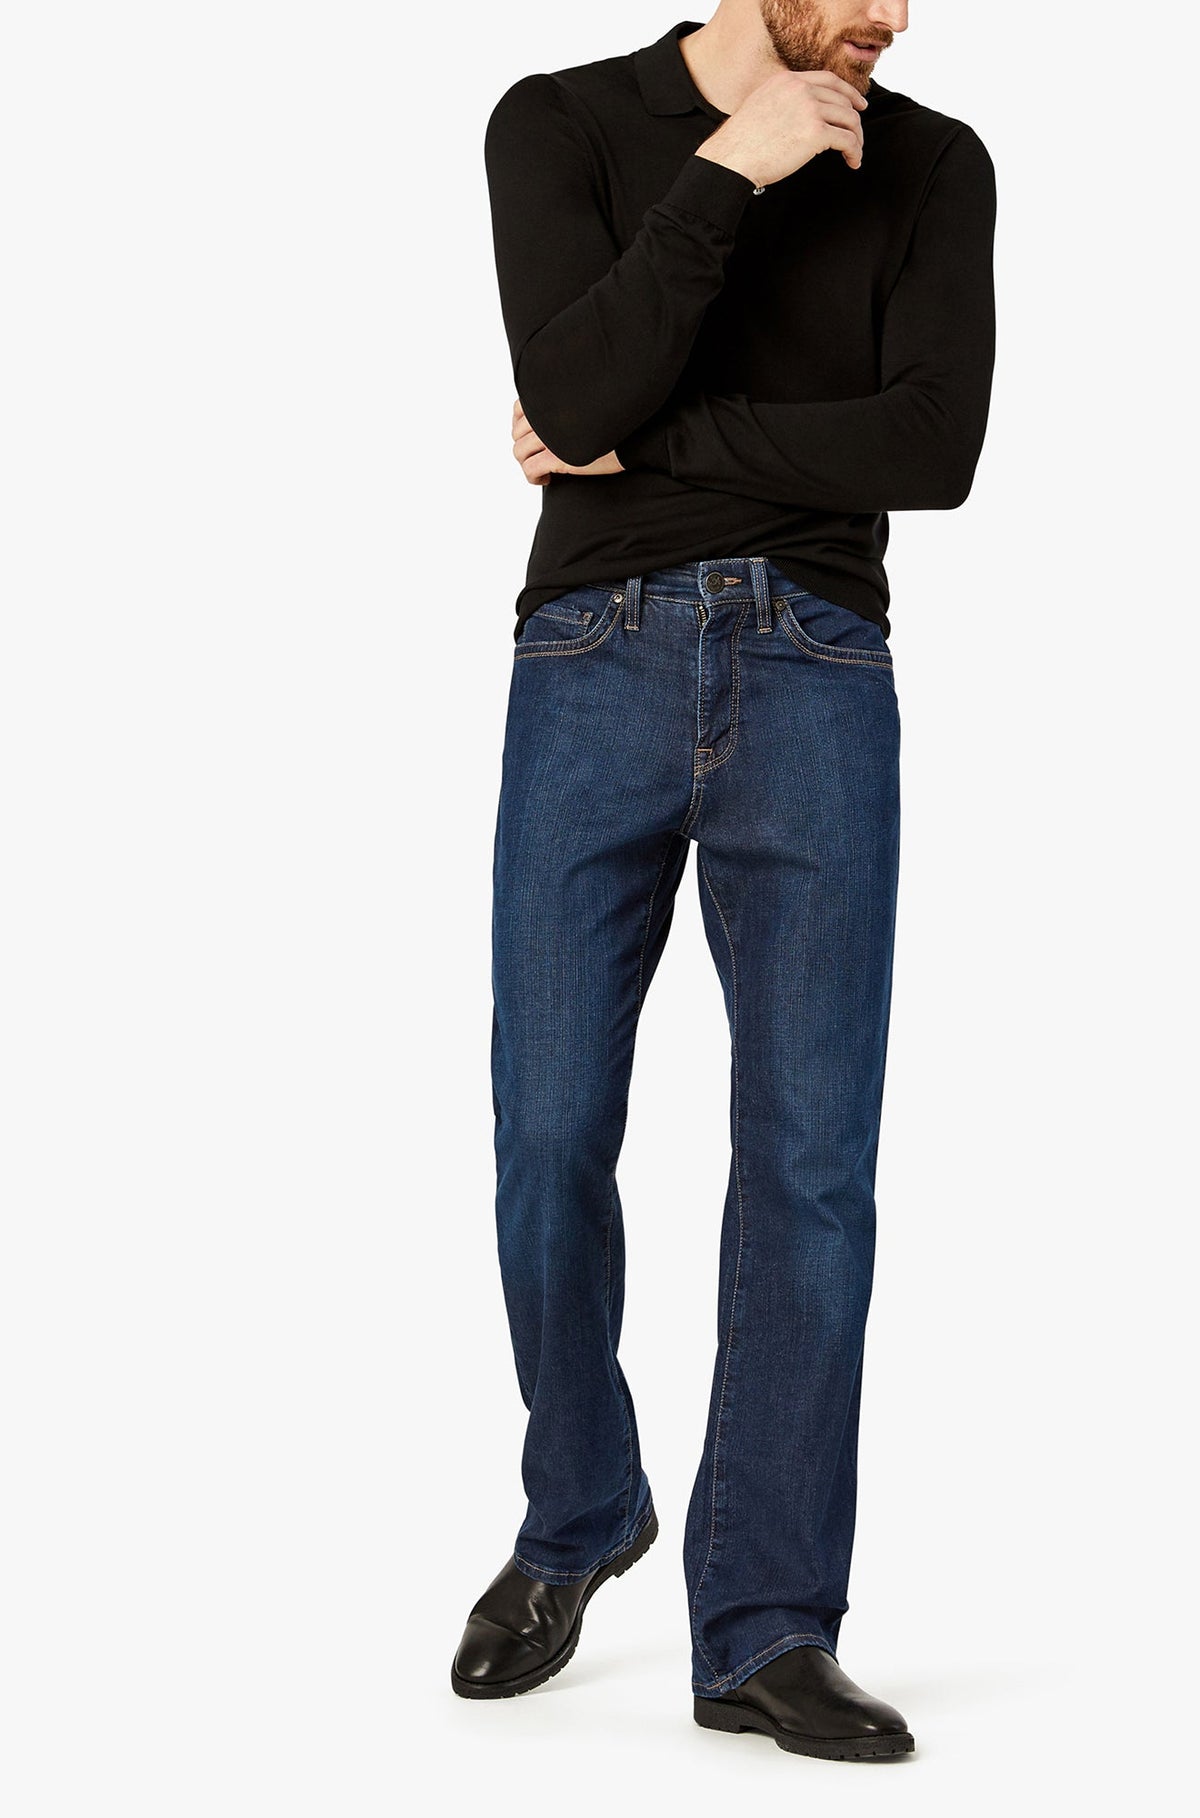 Jeans pour homme par 34 Heritage | Charisma/H001118-12783 Cachemire Foncé/Dark Cashmere | Machemise.ca, vêtements mode pour hommes